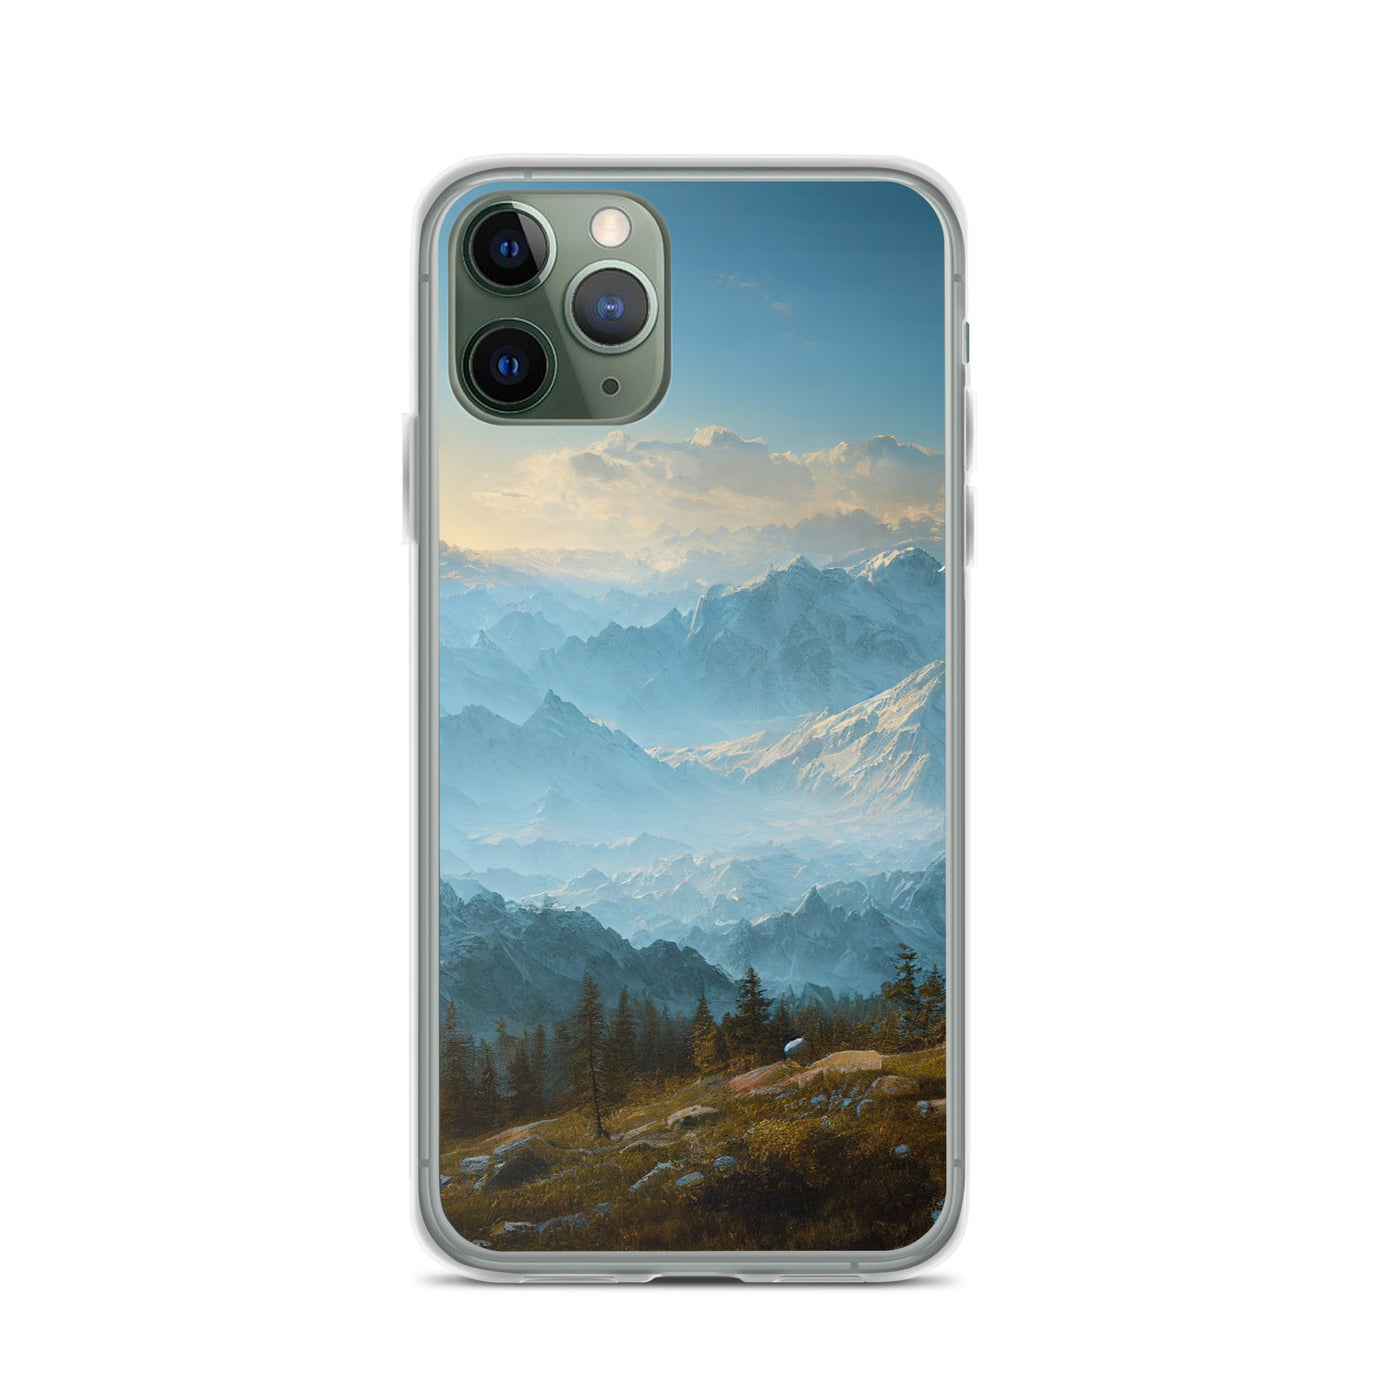 Schöne Berge mit Nebel bedeckt - Ölmalerei - iPhone Schutzhülle (durchsichtig) berge xxx iPhone 11 Pro